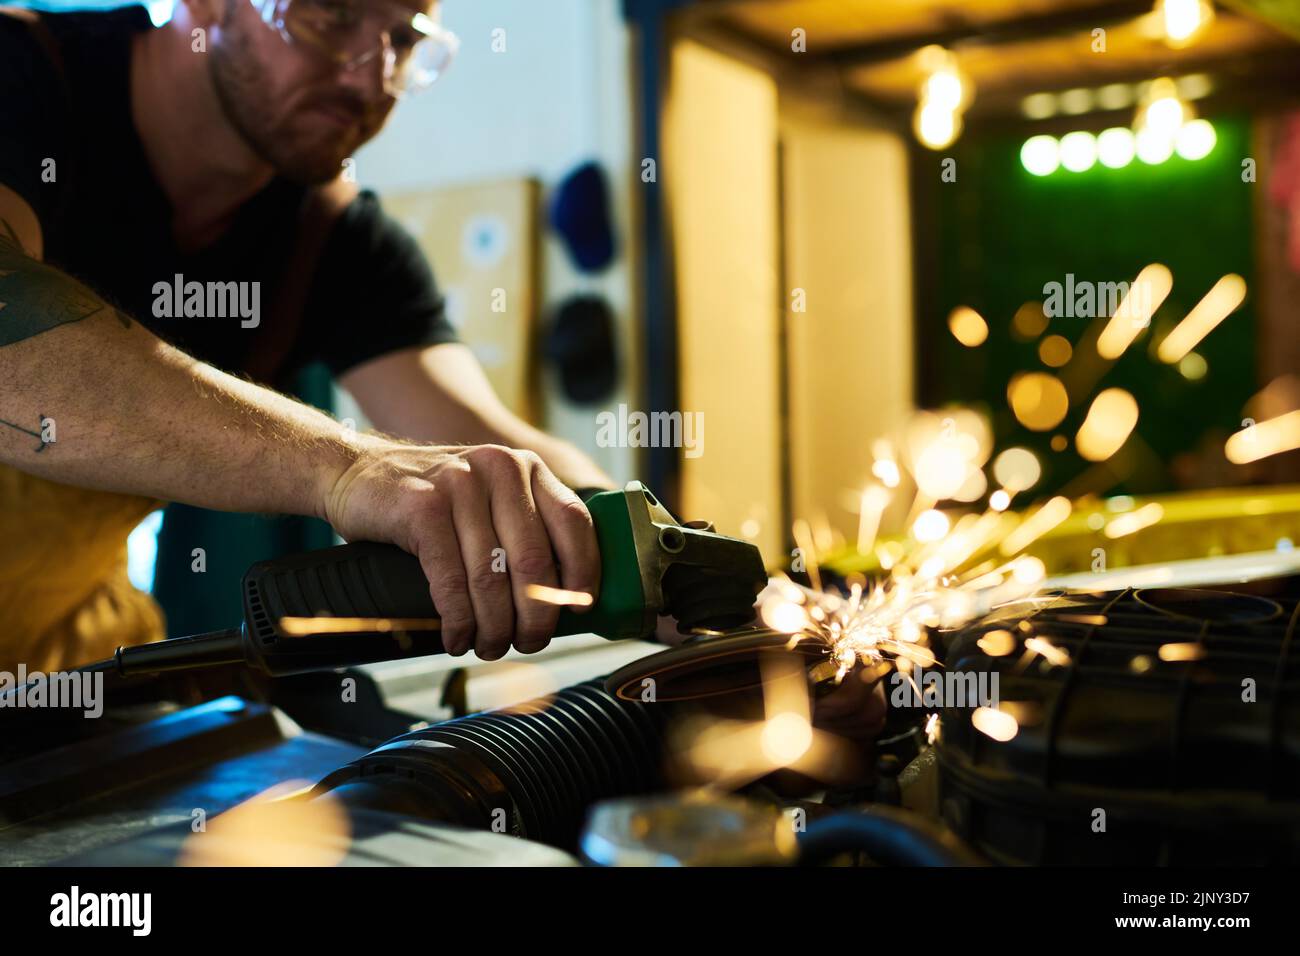 Junger Wartungsmitarbeiter mit elektrischem Handwerkzeug schleifend Details des Automotors beim Biegen über offene Haube während der Arbeit Stockfoto